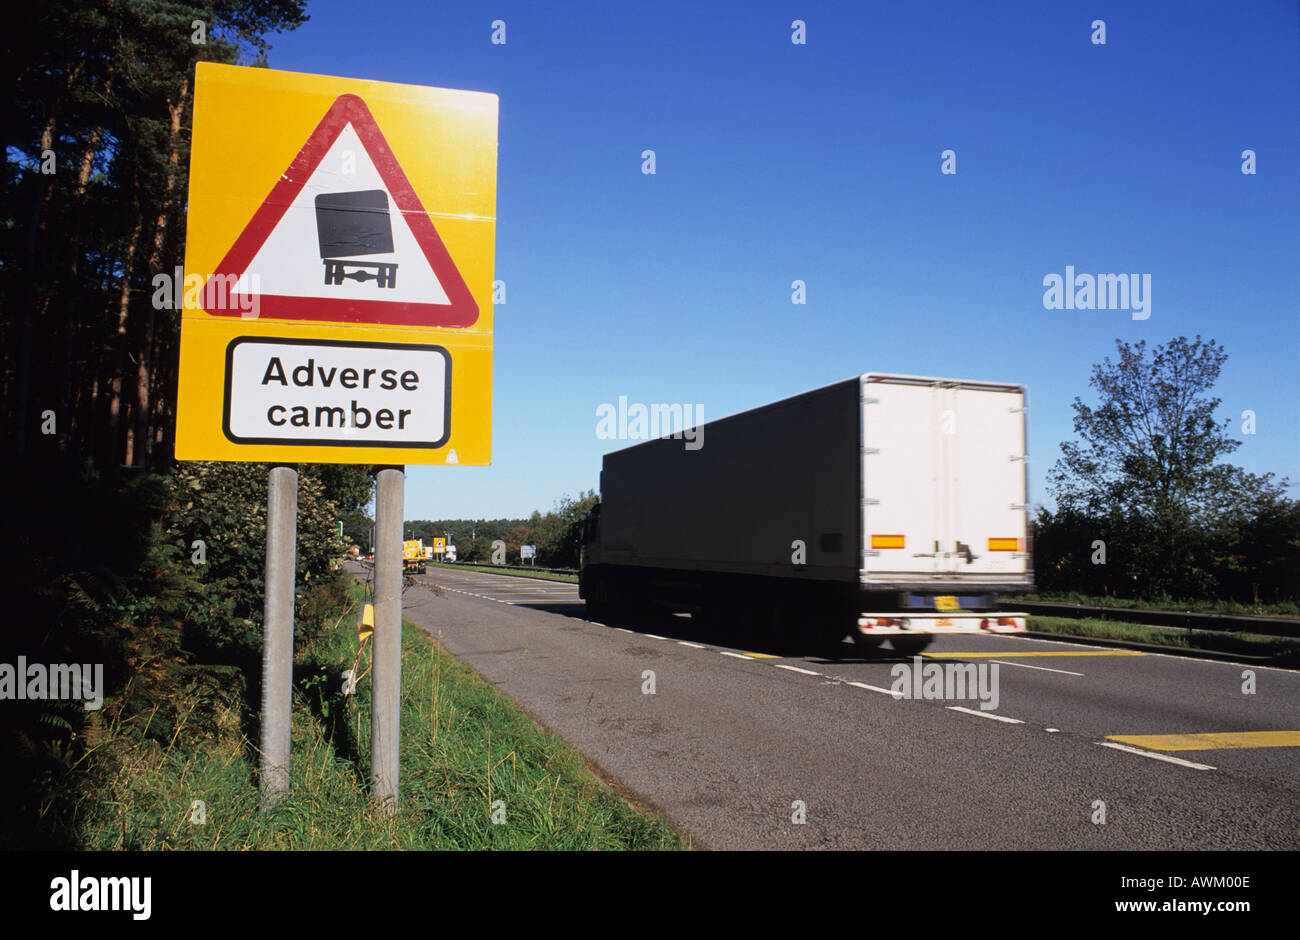 Camion passant panneau d'avertissement d'effets indésirables sur la cambrure de la route a1 road nottingham uk Banque D'Images